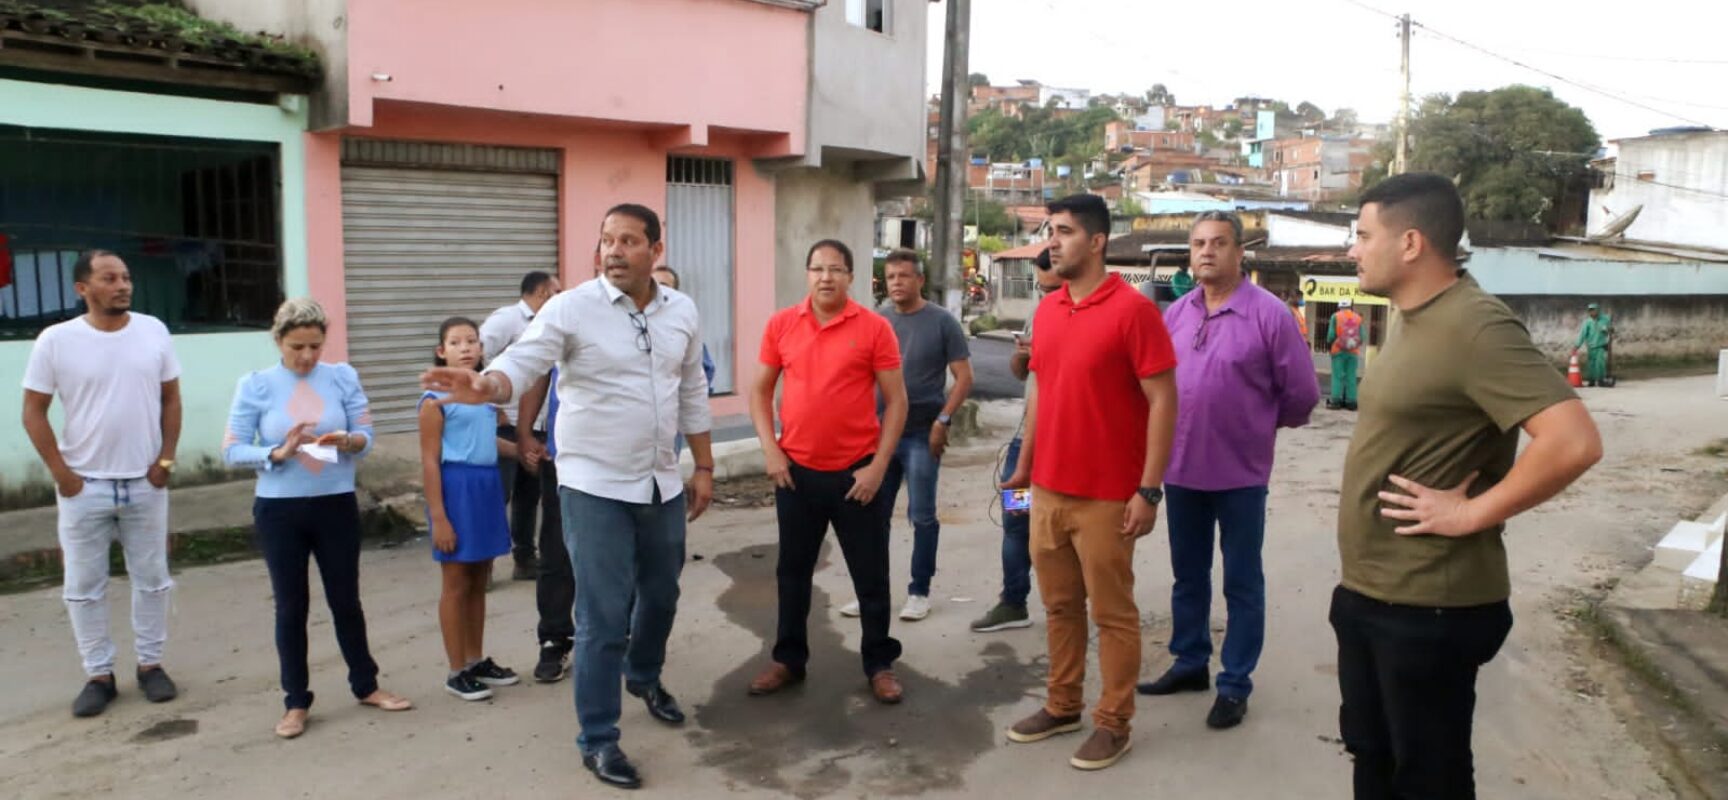 Prefeito Augusto Castro anuncia obras de requalificação da Escola Municipal Pedro Jerônimo ao vistoriar urbanização do bairro